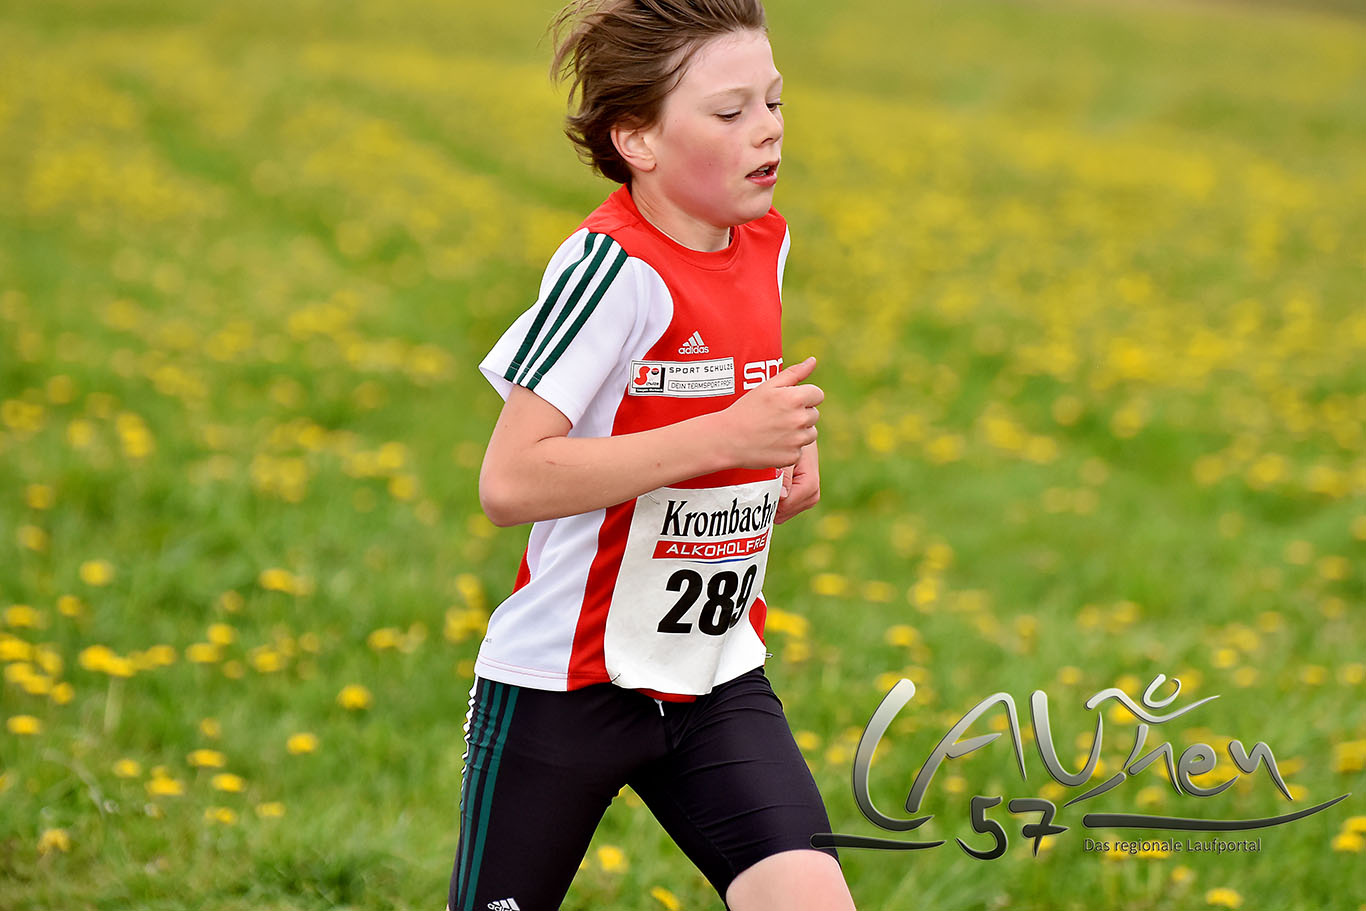 Der 11-jährige Tom Luca Krumm vom CLV Siegerland gewann im Lauf der Schüler über 1 Kilometer – eine halbe Stunde später startete er erneut über 6,5 Kilometer im Jedermannlauf.